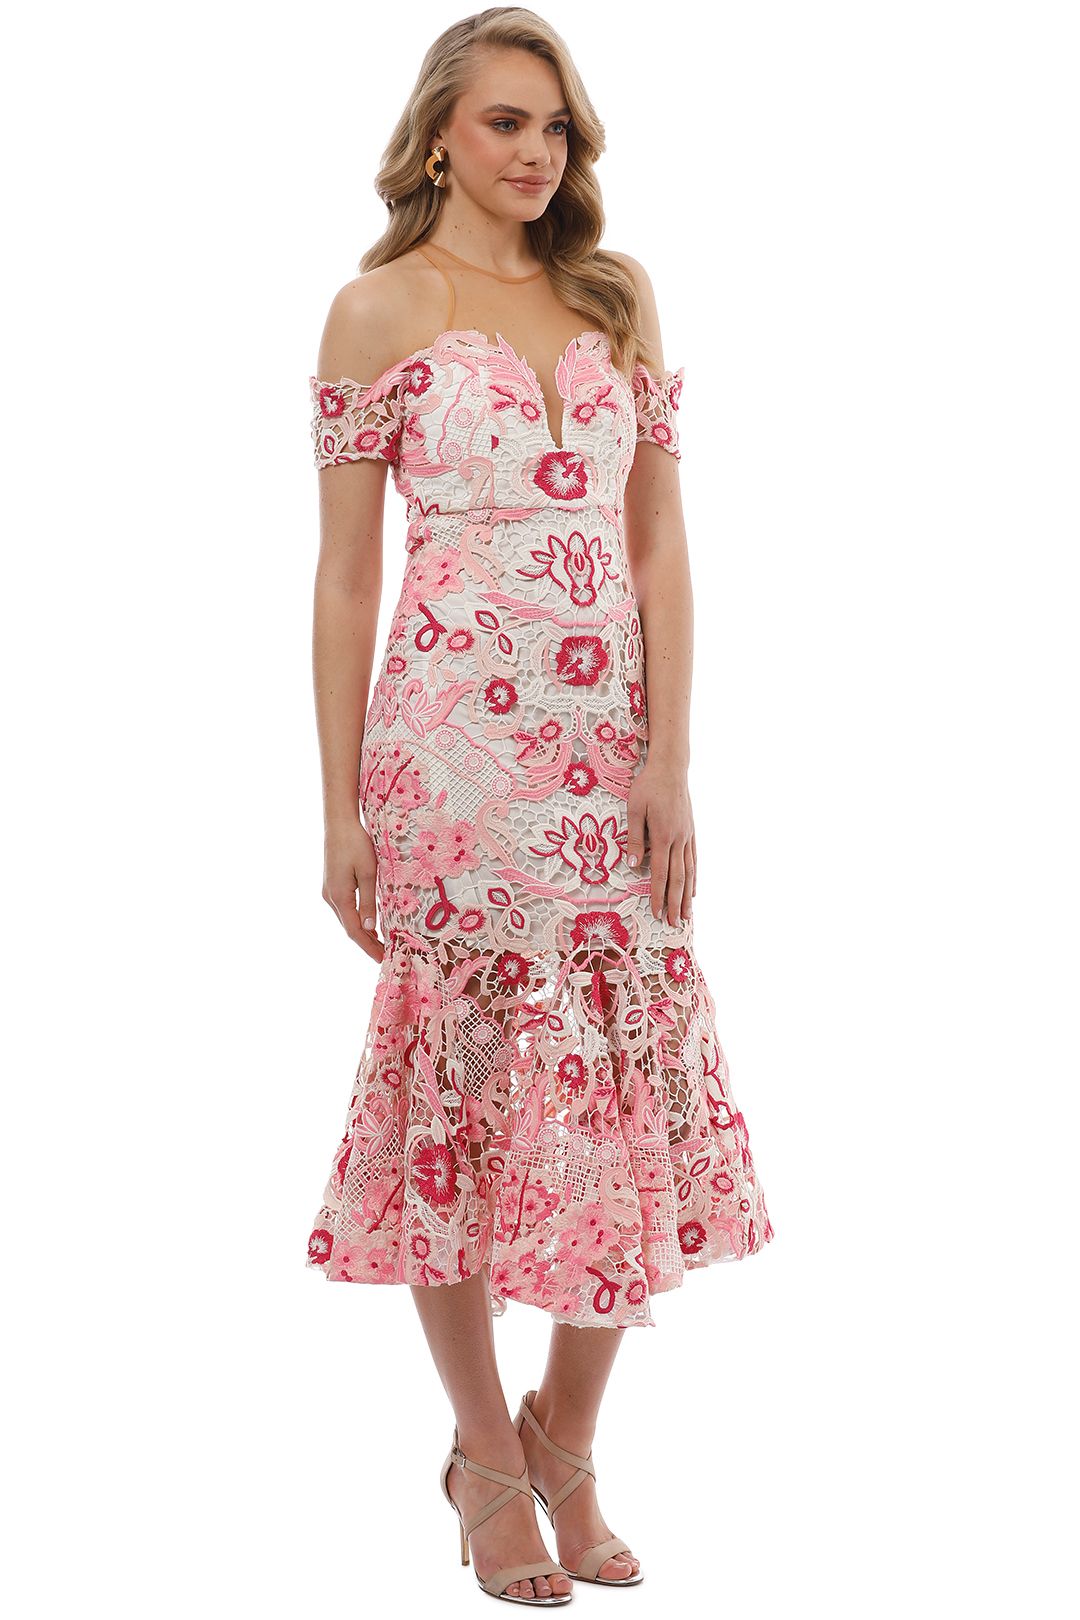 Thurley - Venus Dress - Pink Multi - Side